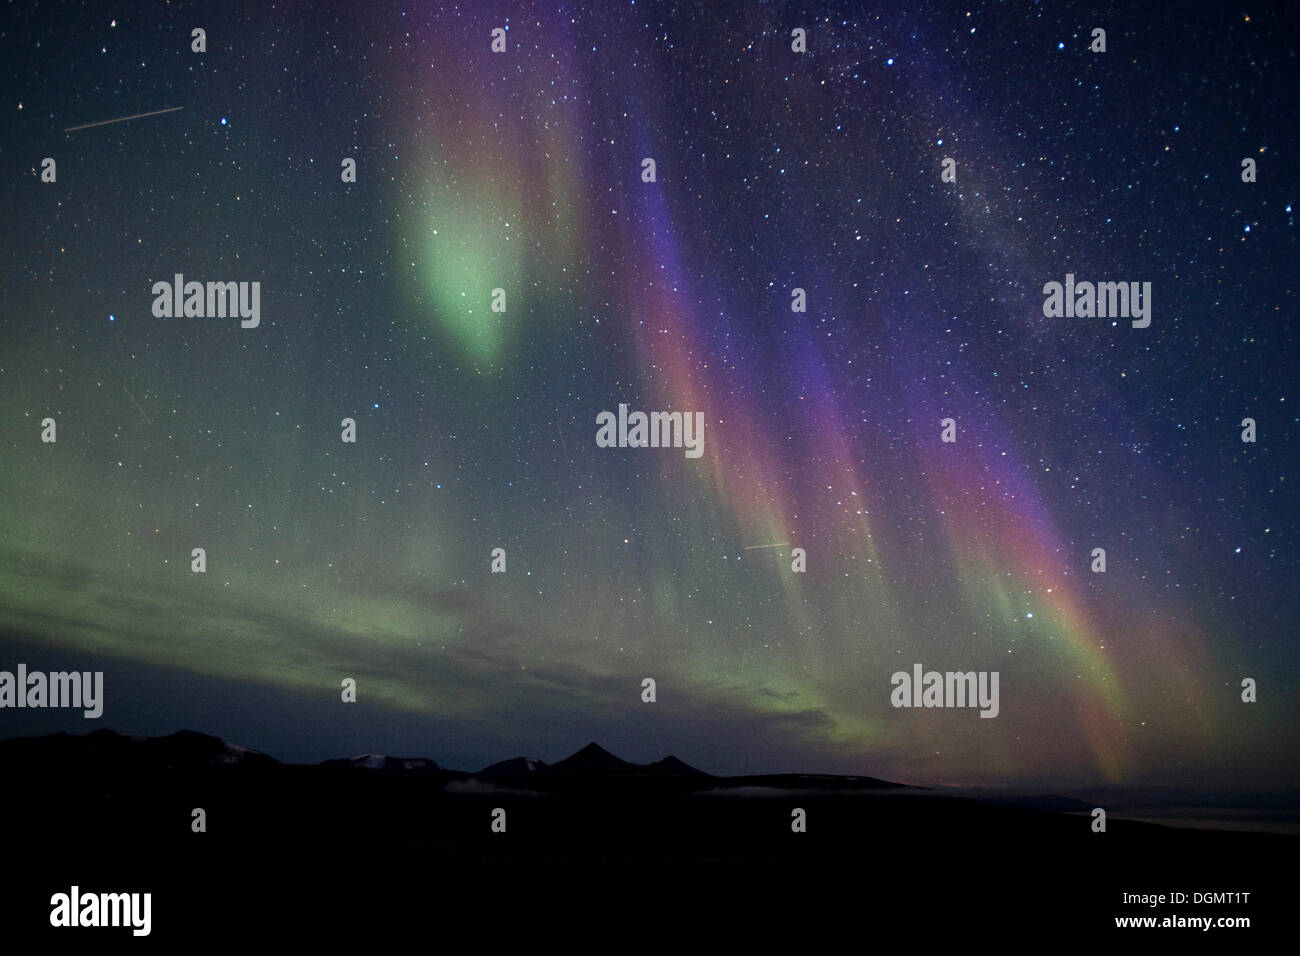 Vert, Bleu et violet northern lights, aurora borealis, avec de légères traces de deux satellites, Spitsbergen, Svalbard, Norvège Banque D'Images